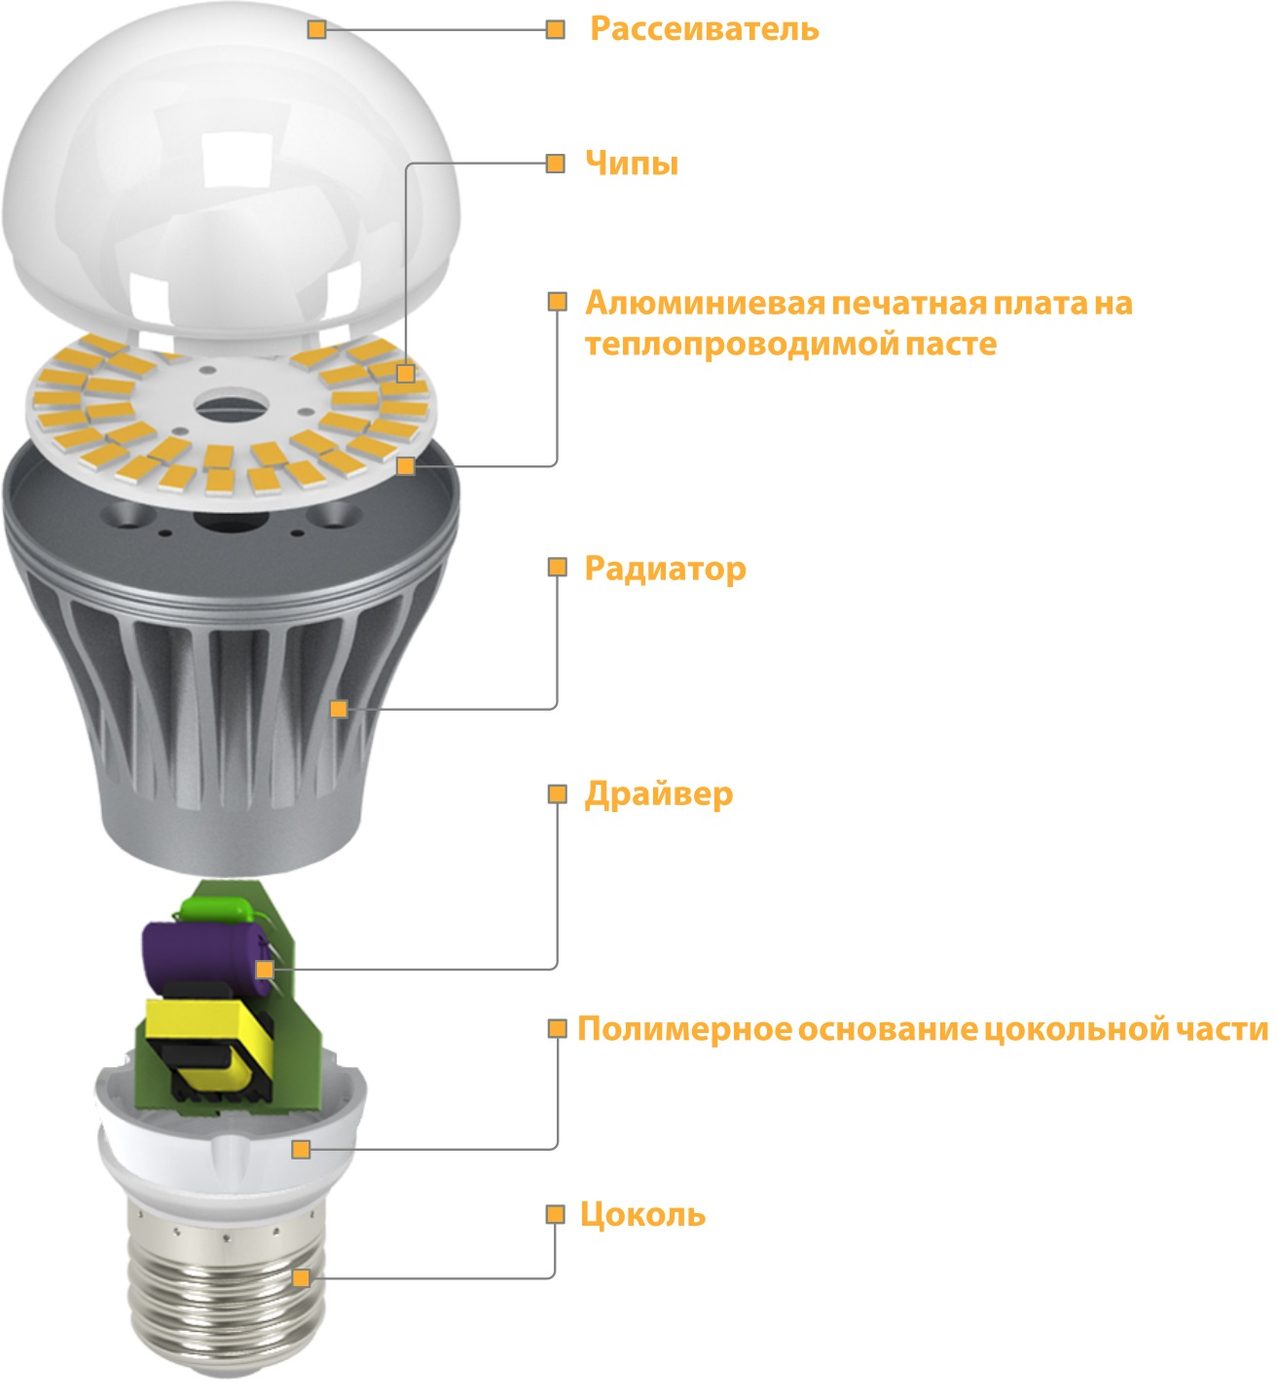 Импульсный источник света. Светодиодная лампа схема лампы. Схема лампочки диодной лампы. Из чего состоит диодная лампа. Светодиодные лампы - диммируемые лампы на 220в.